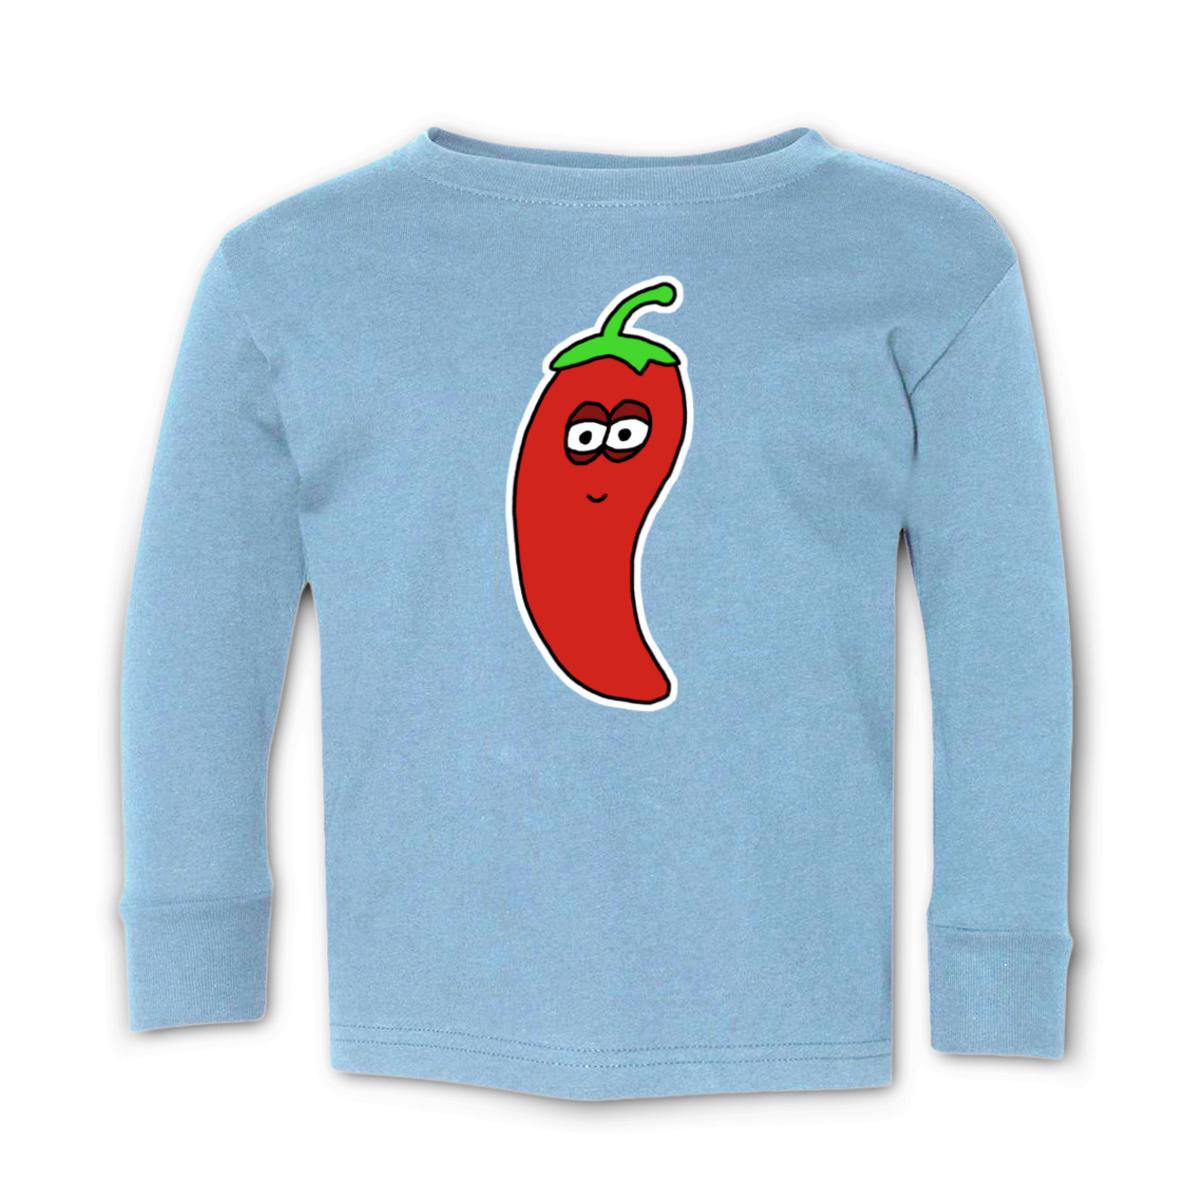 Chili Pepper Toddler Long Sleeve Tee 56T light-blue